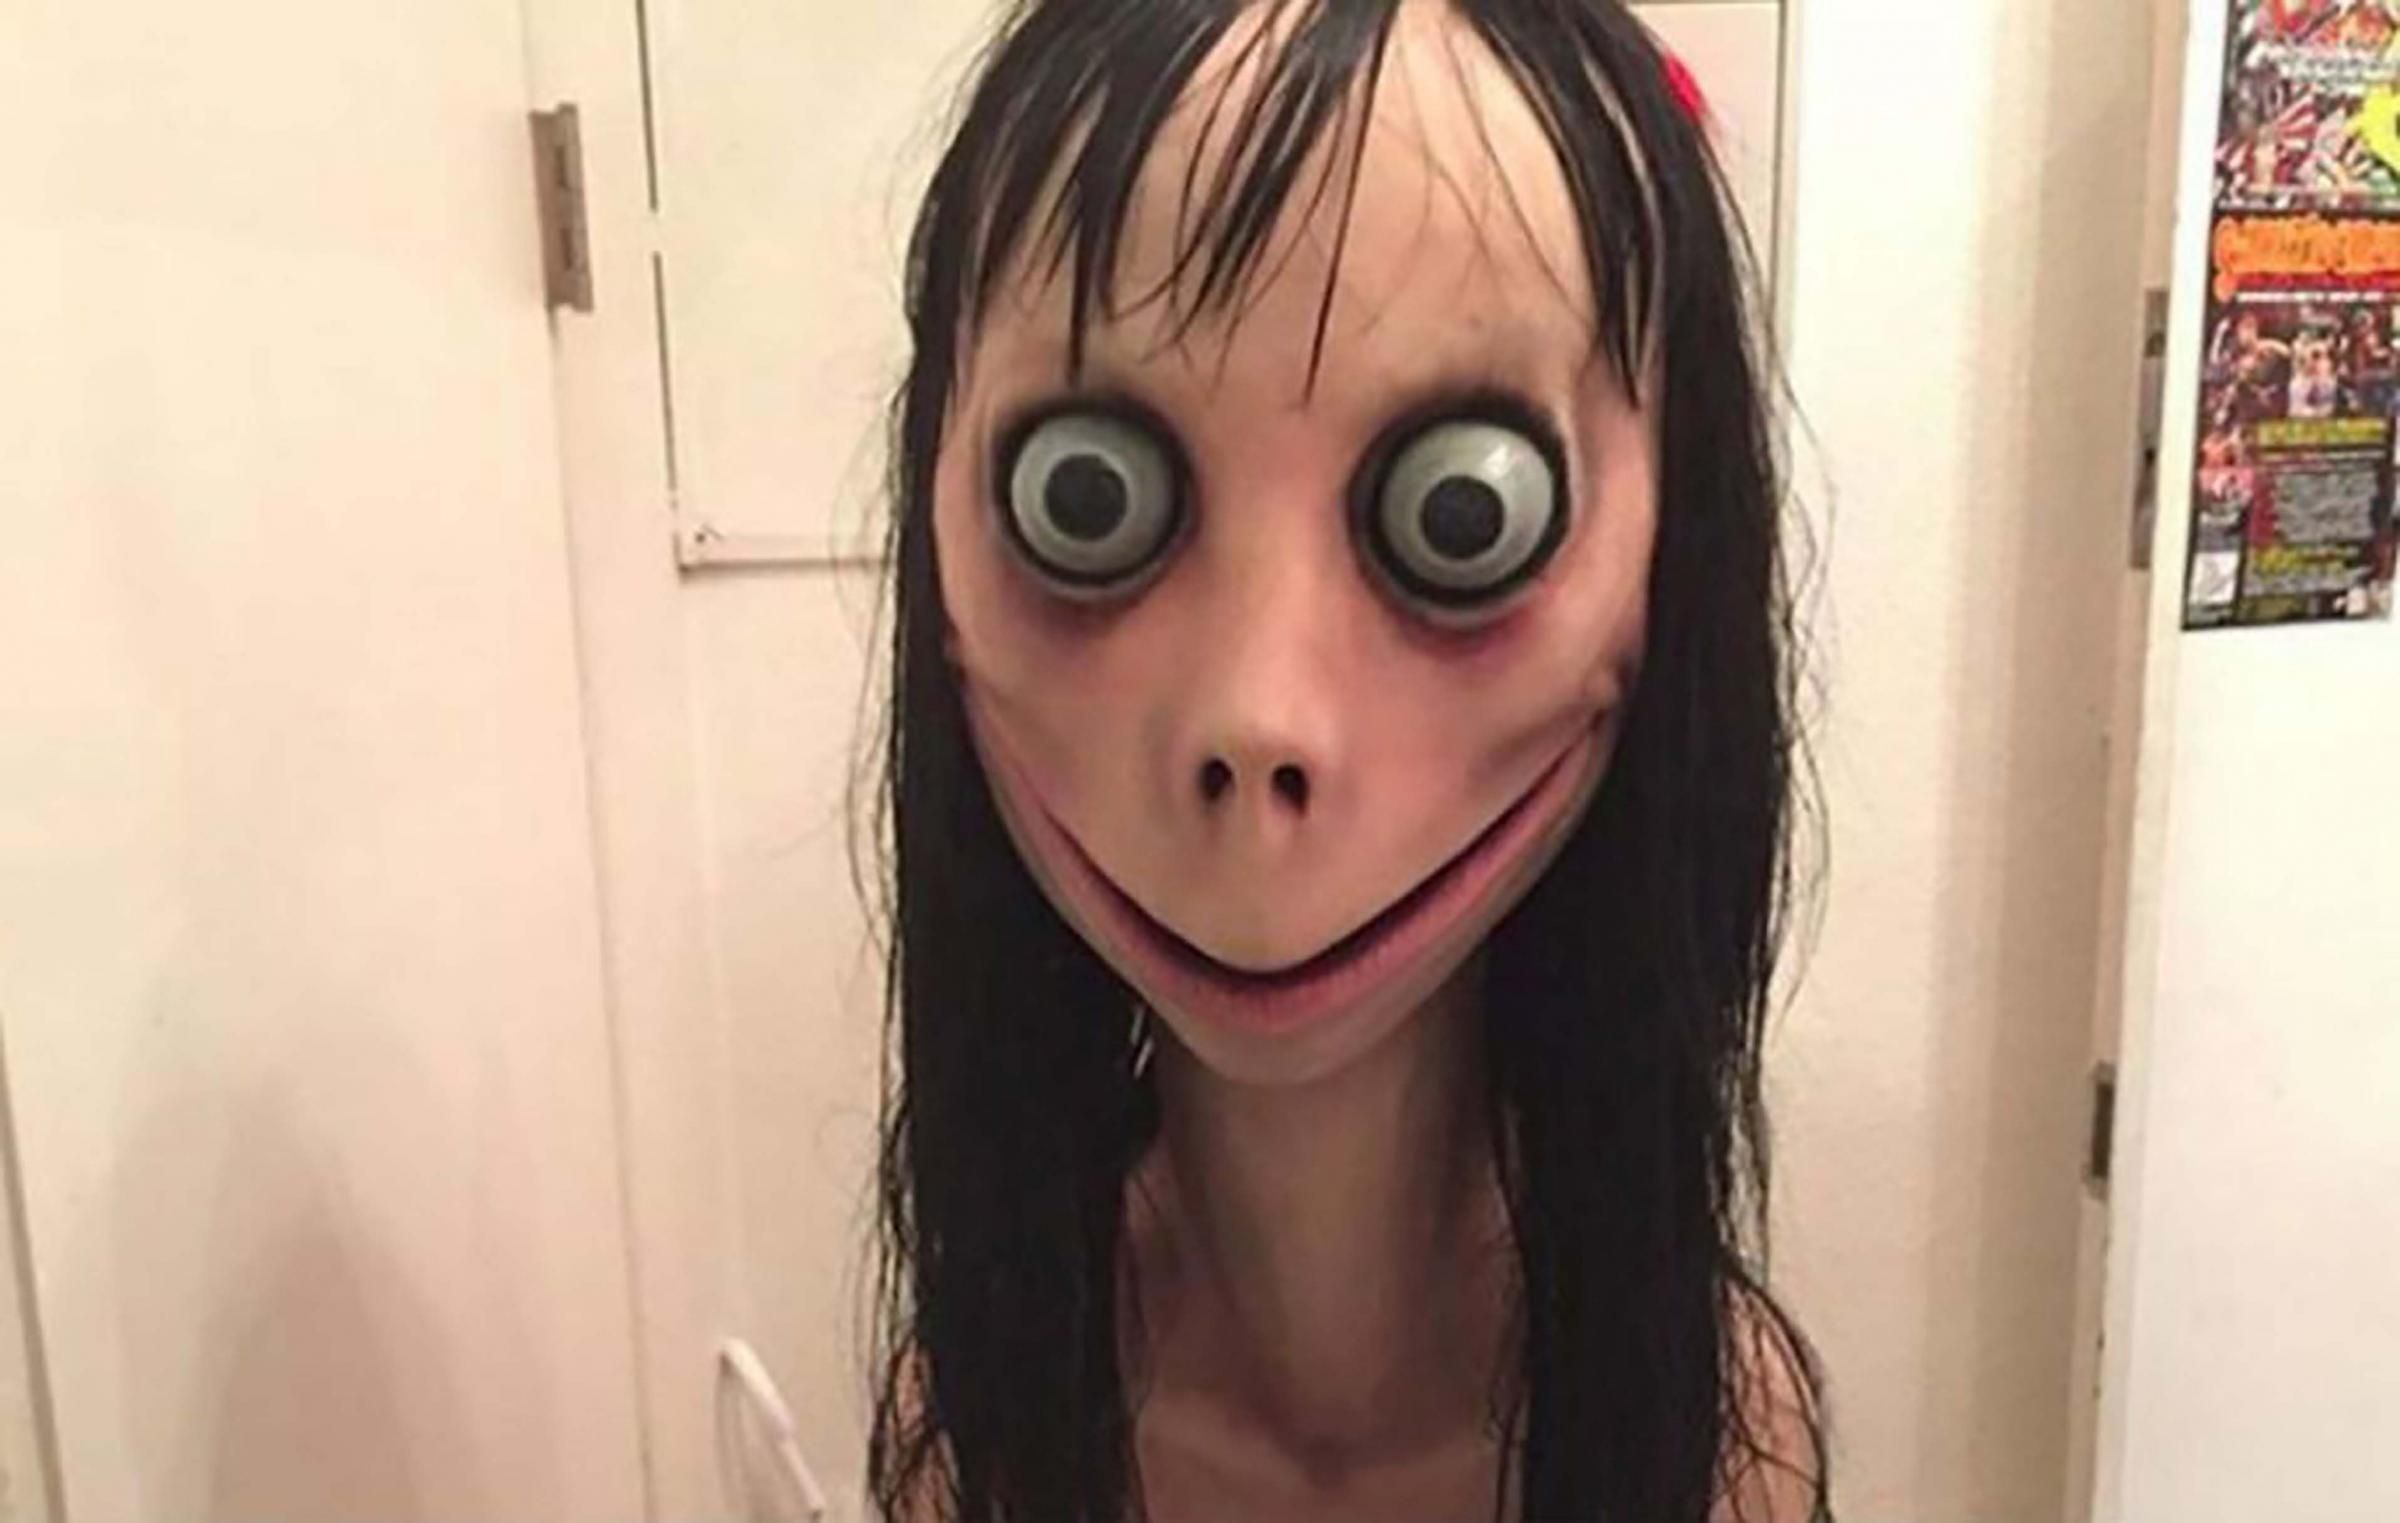 MoMo Desafio Meme Horror Assustador Chapelaria Halloween Bola